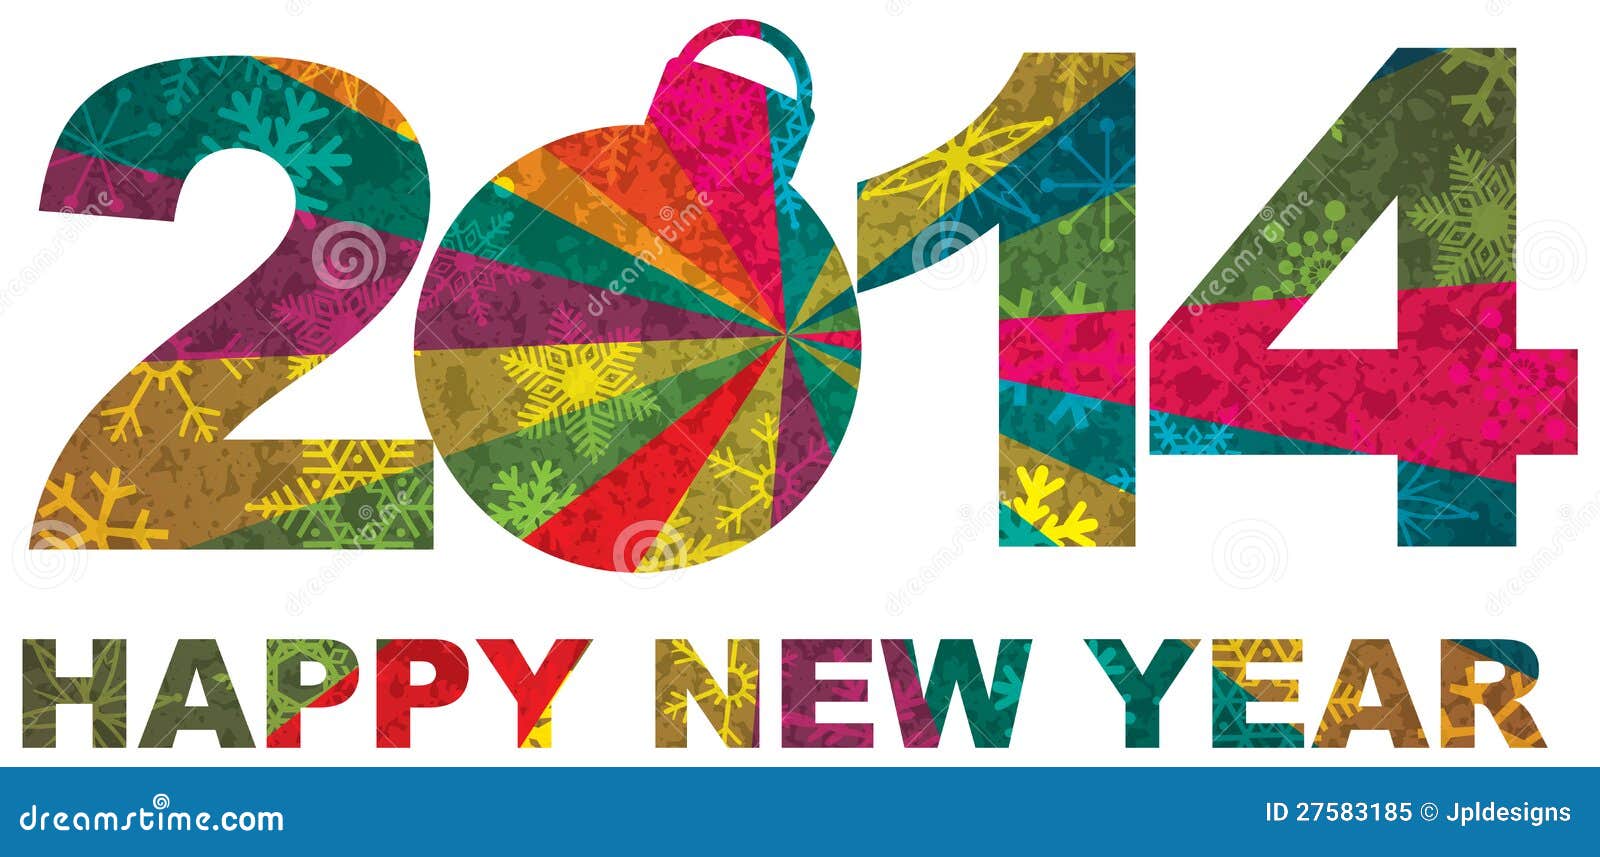 أجمل كفرات للفيس بوك بمناسبة رأس السنة ،العام الجديد 2014 happy new year 57